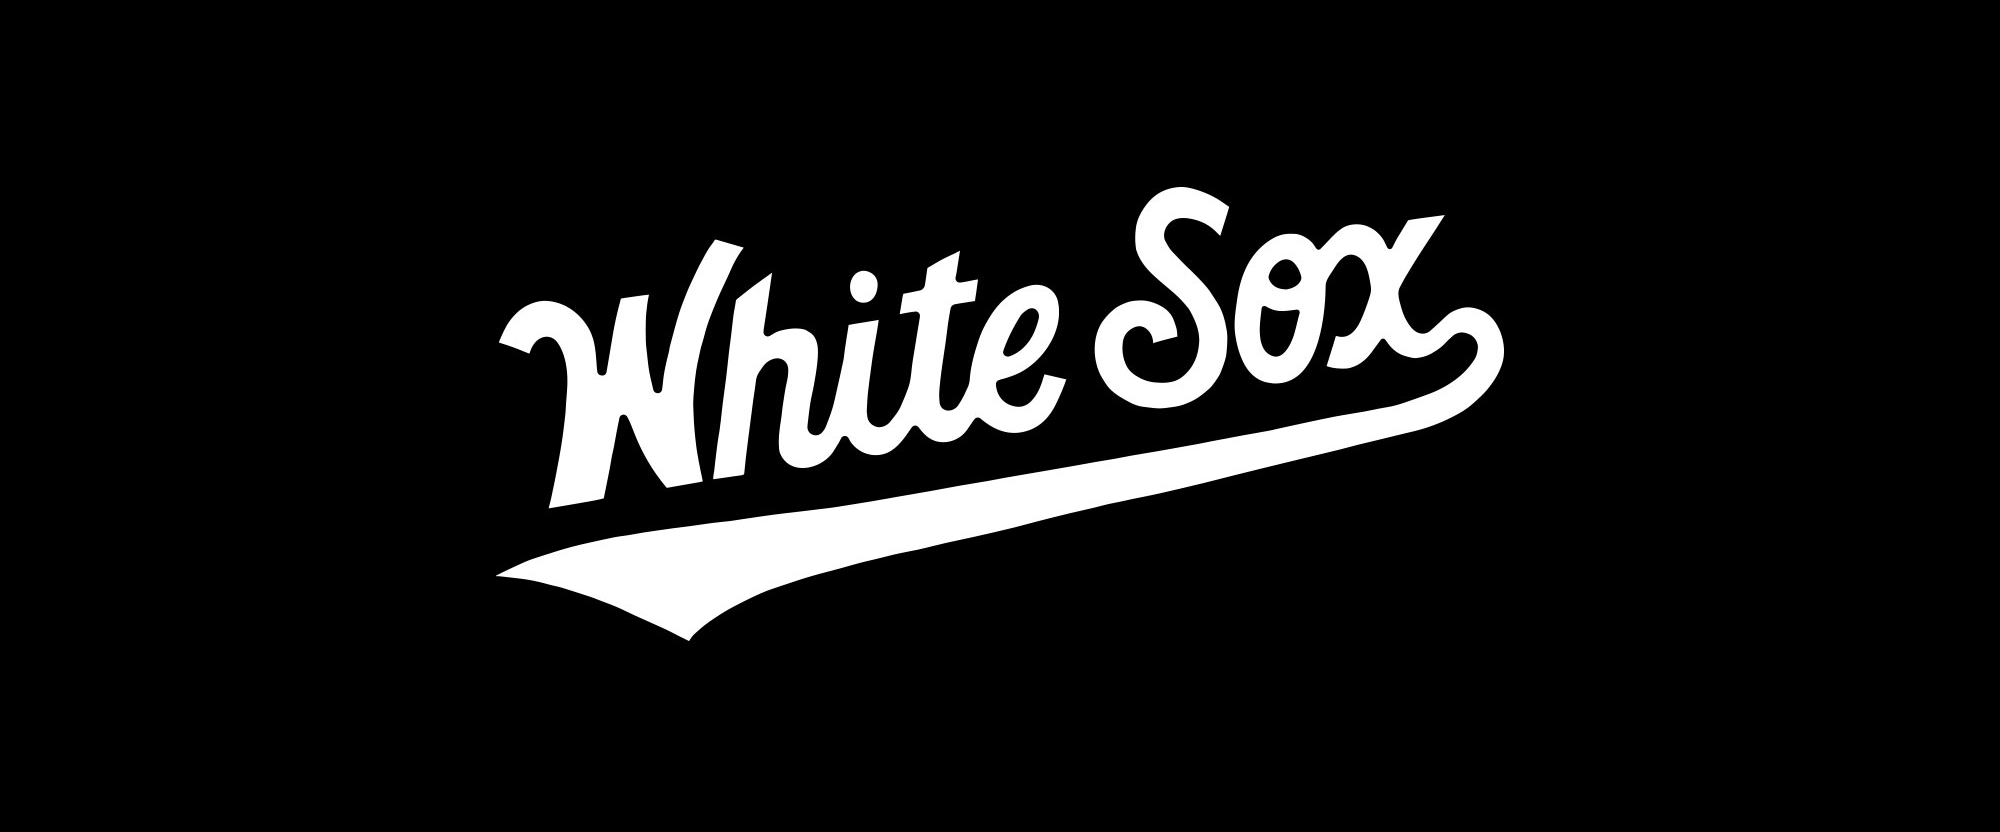 芝加哥White Sox职业棒球队品牌形象塑造